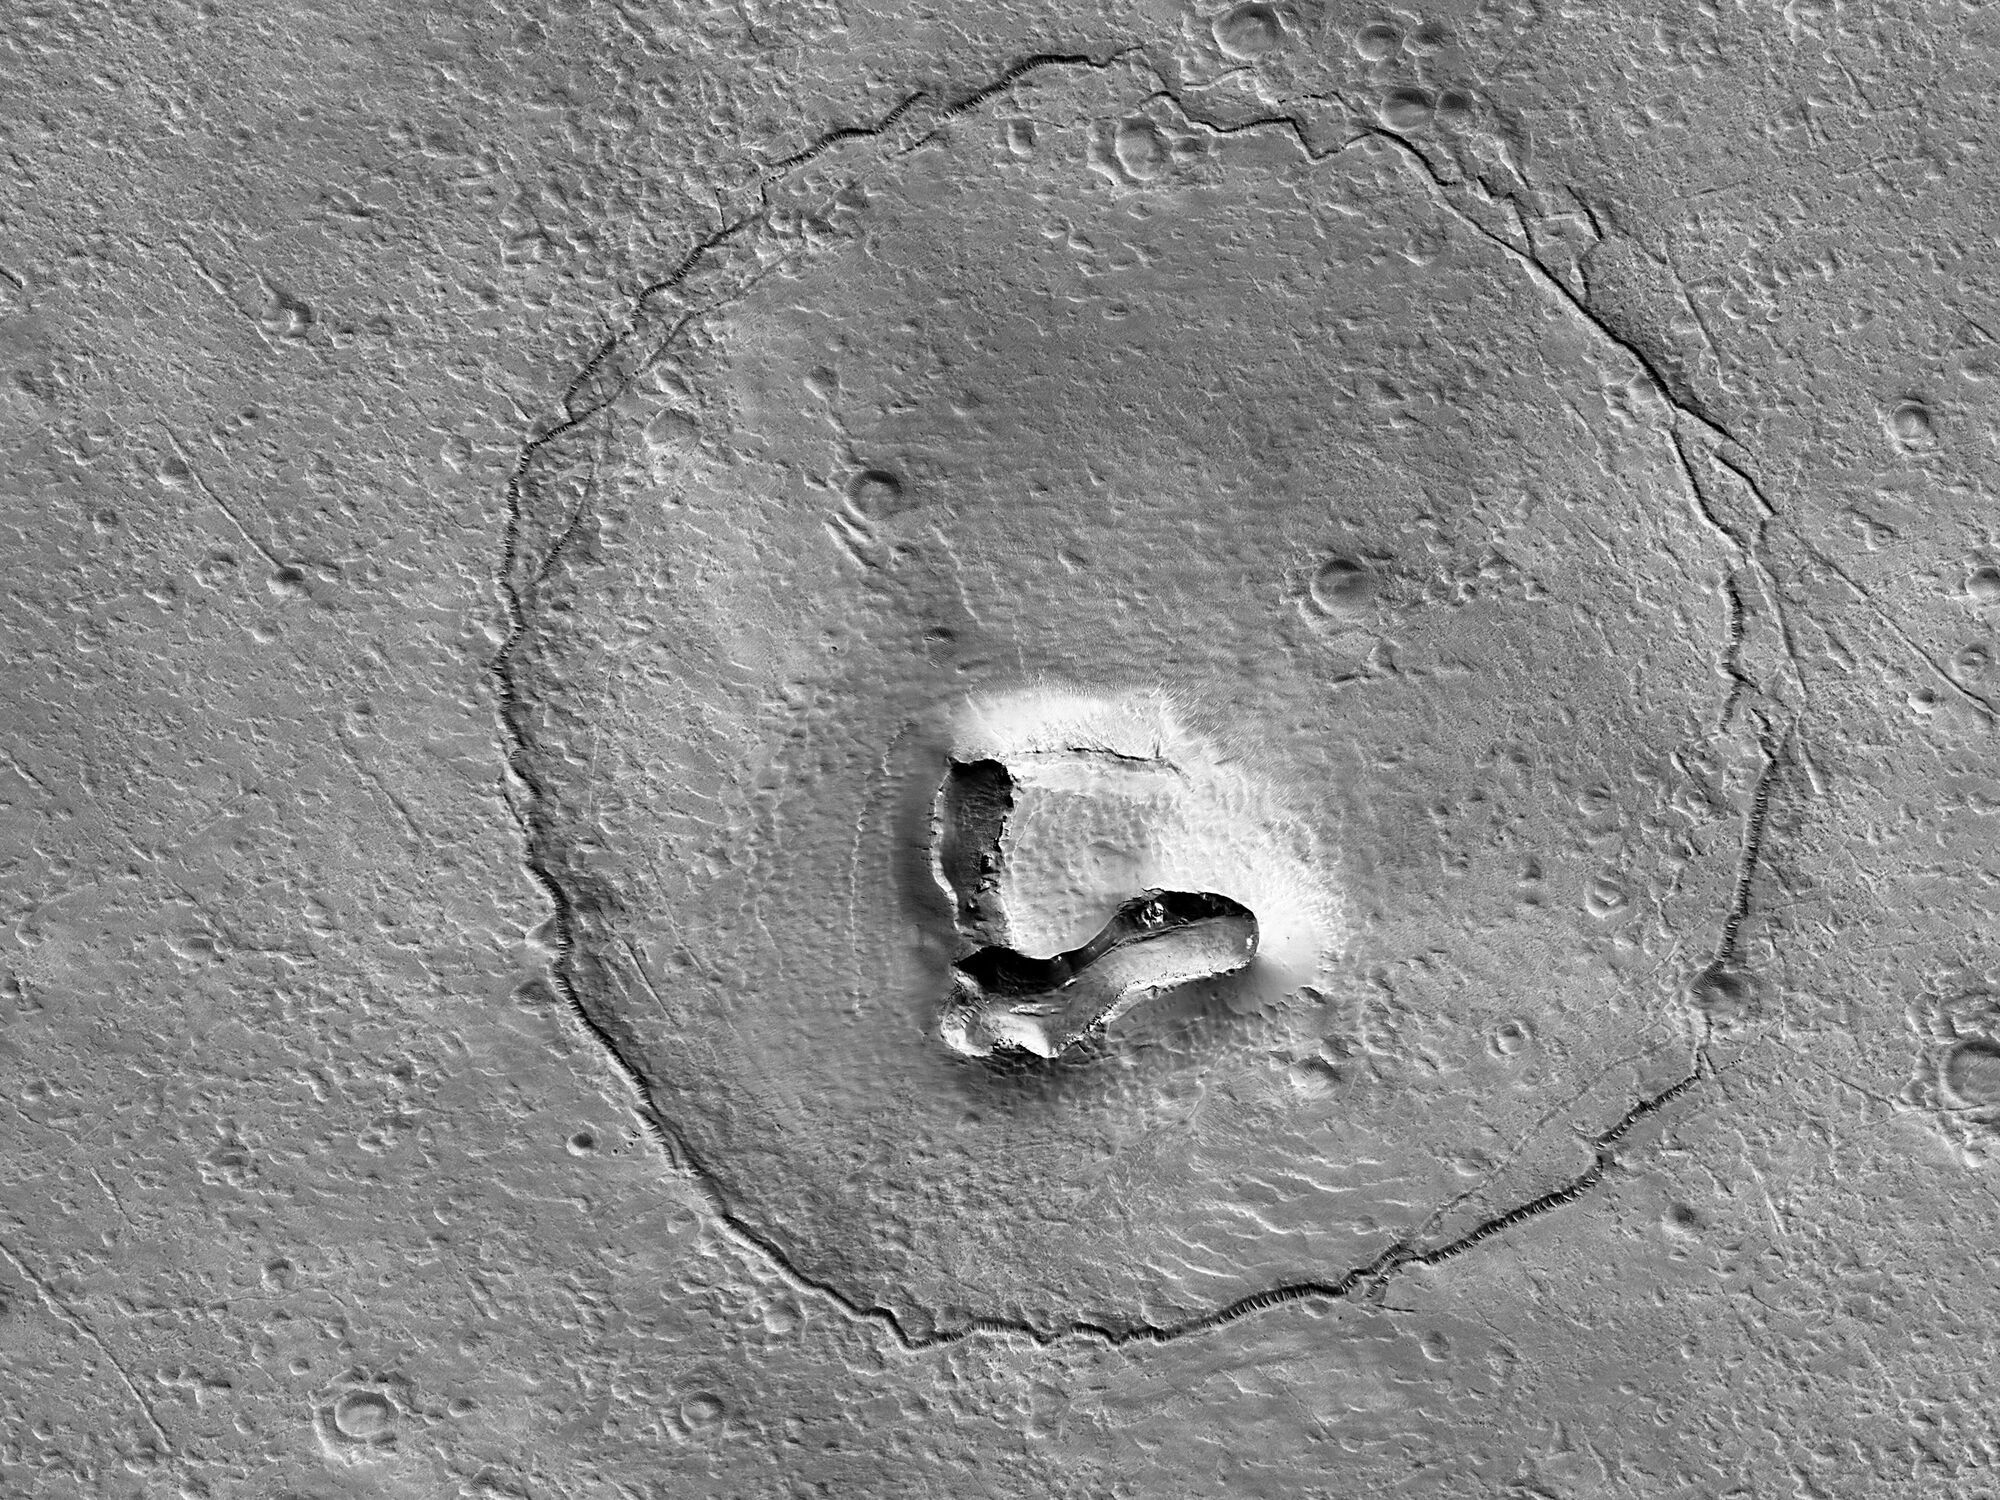 Апарат NASA Mars Reconnaissance Orbiter зробив знімок утворення на поверхні Марса, яке схоже на мордочку ведмедя